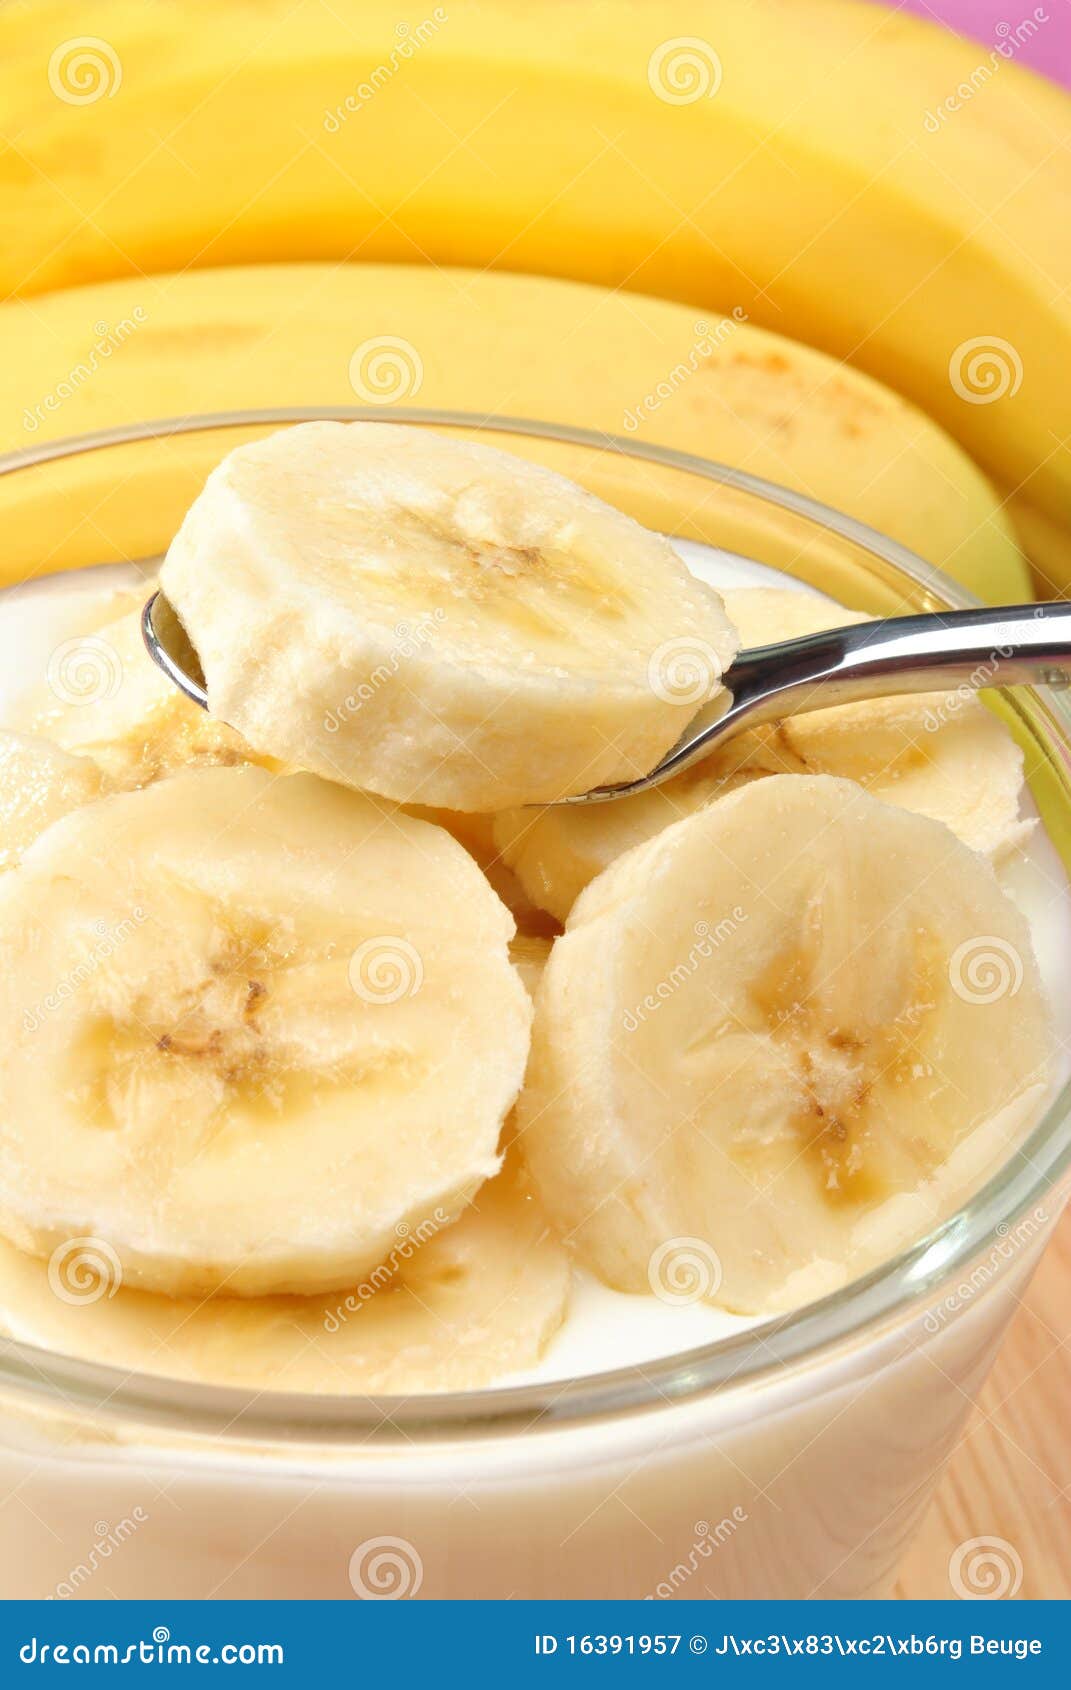 香蕉酸奶奶昔怎么做_香蕉酸奶奶昔的做法_馨心杨_豆果美食